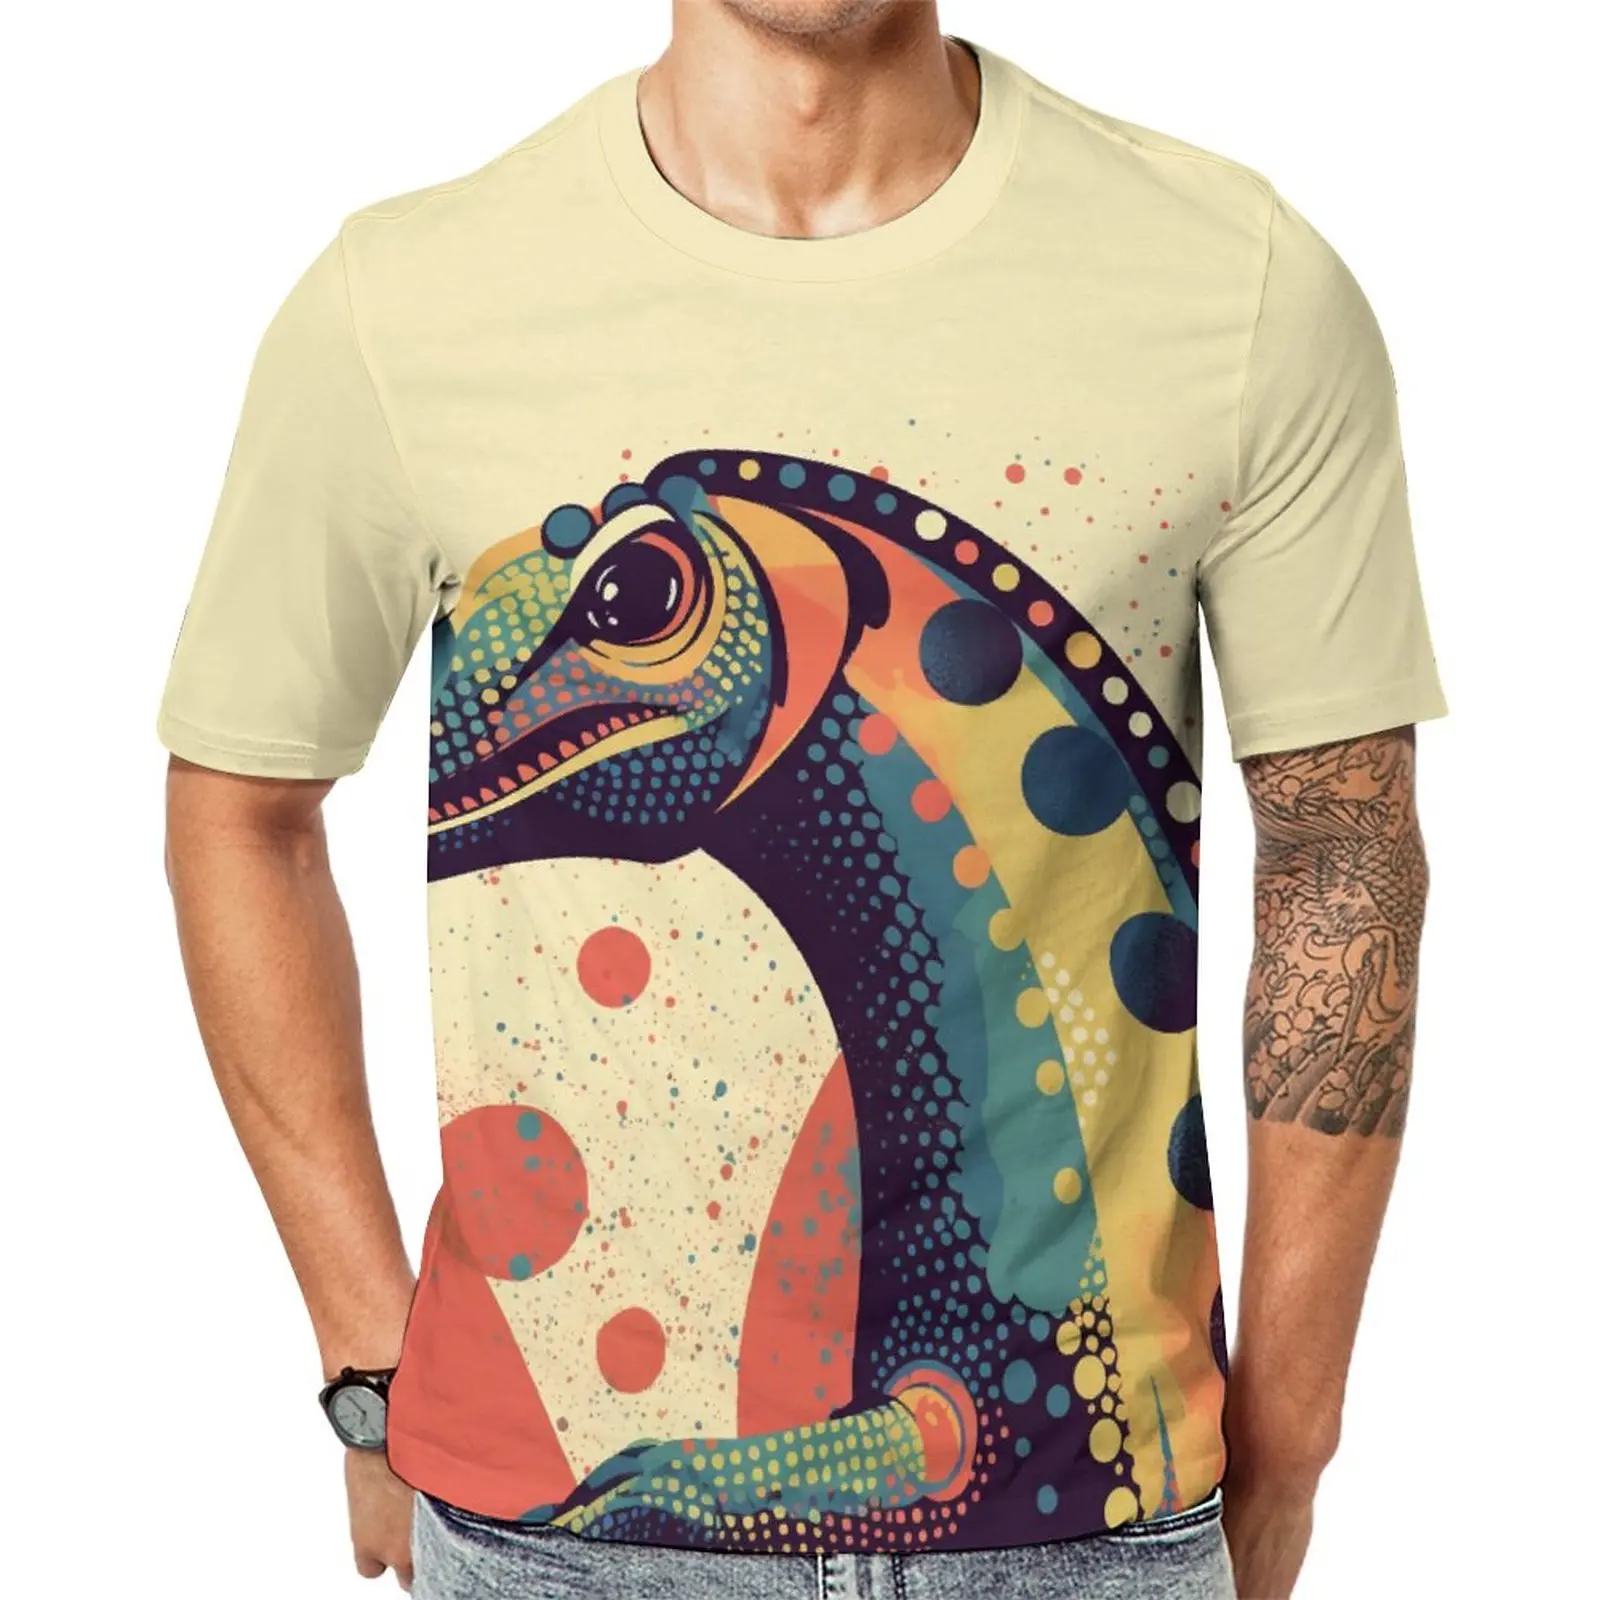 

Футболка с динозавром в стиле ретро, разноцветные мужские винтажные футболки премиум-класса, графические футболки с коротким рукавом, потрясающая Одежда большого размера, подарок